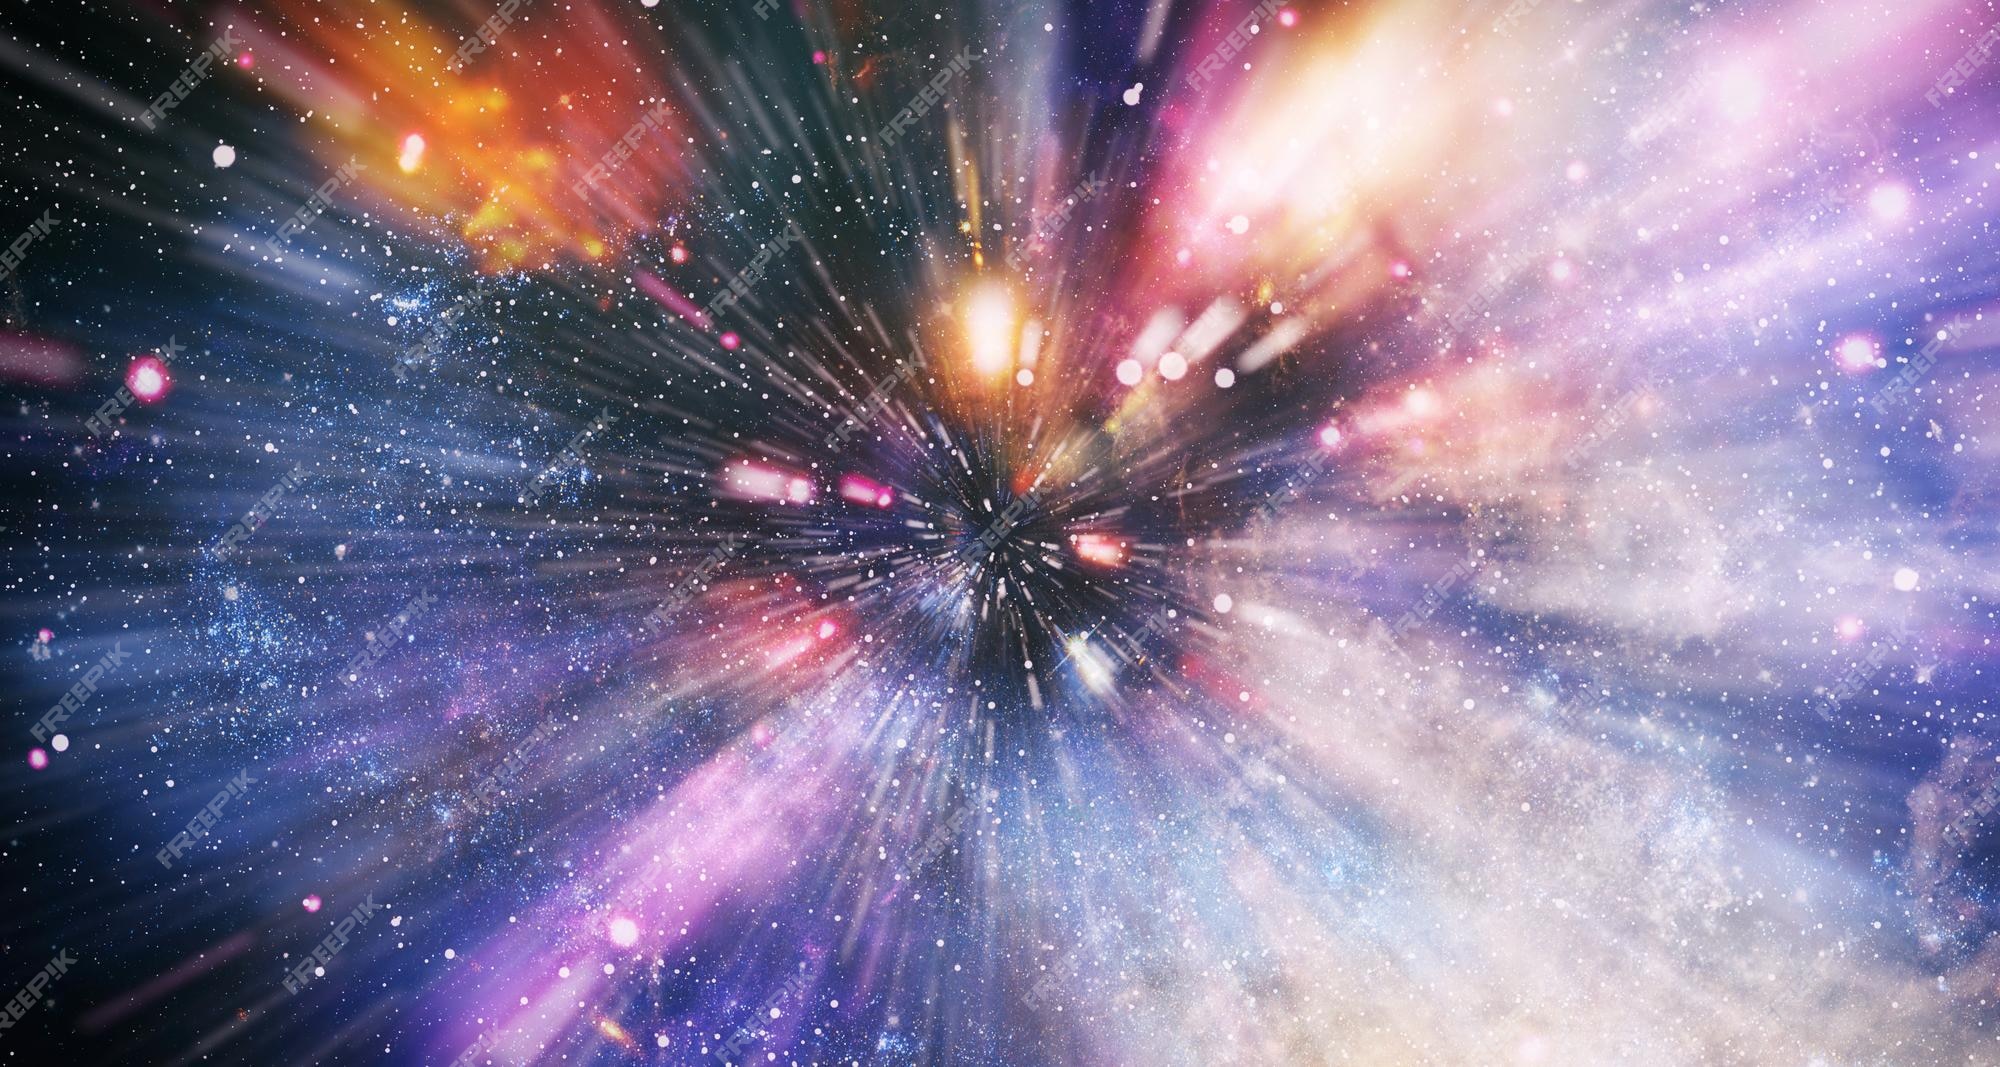 Imágenes de Big Bang - Descarga gratuita en Freepik